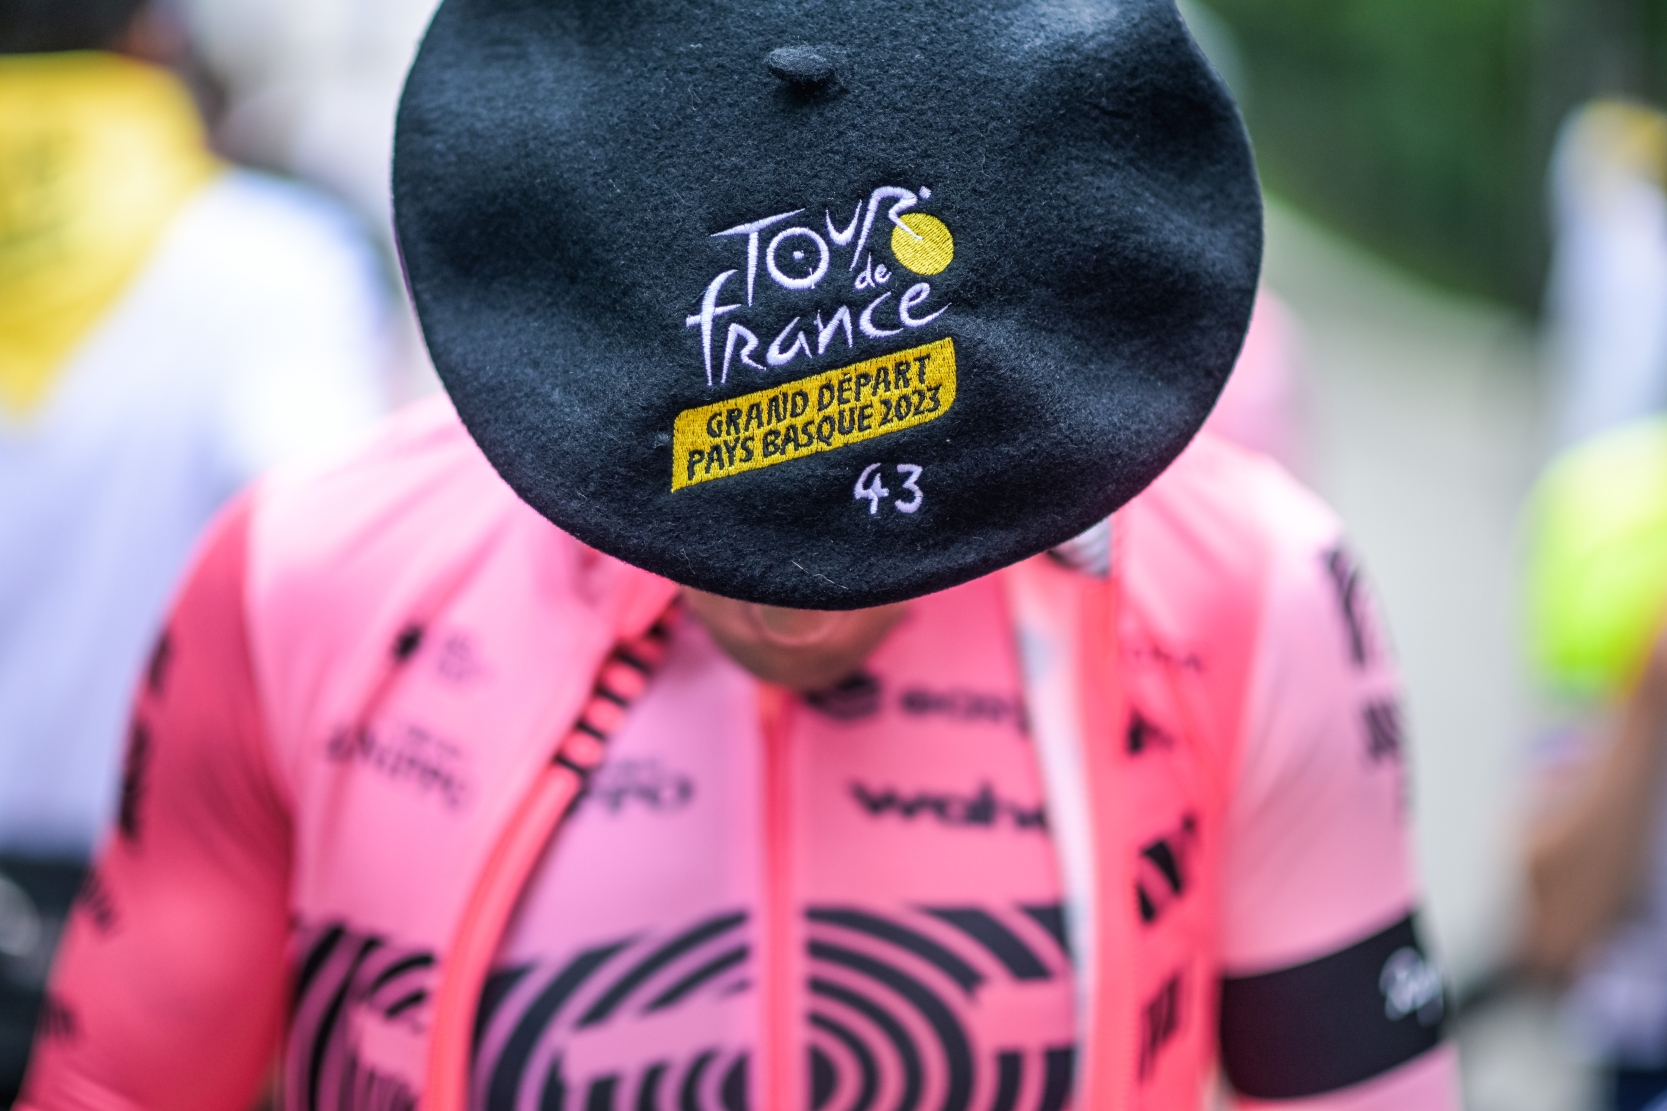 Baskijski kapelusz txapella na głowie kolarza przed startem Tour de France